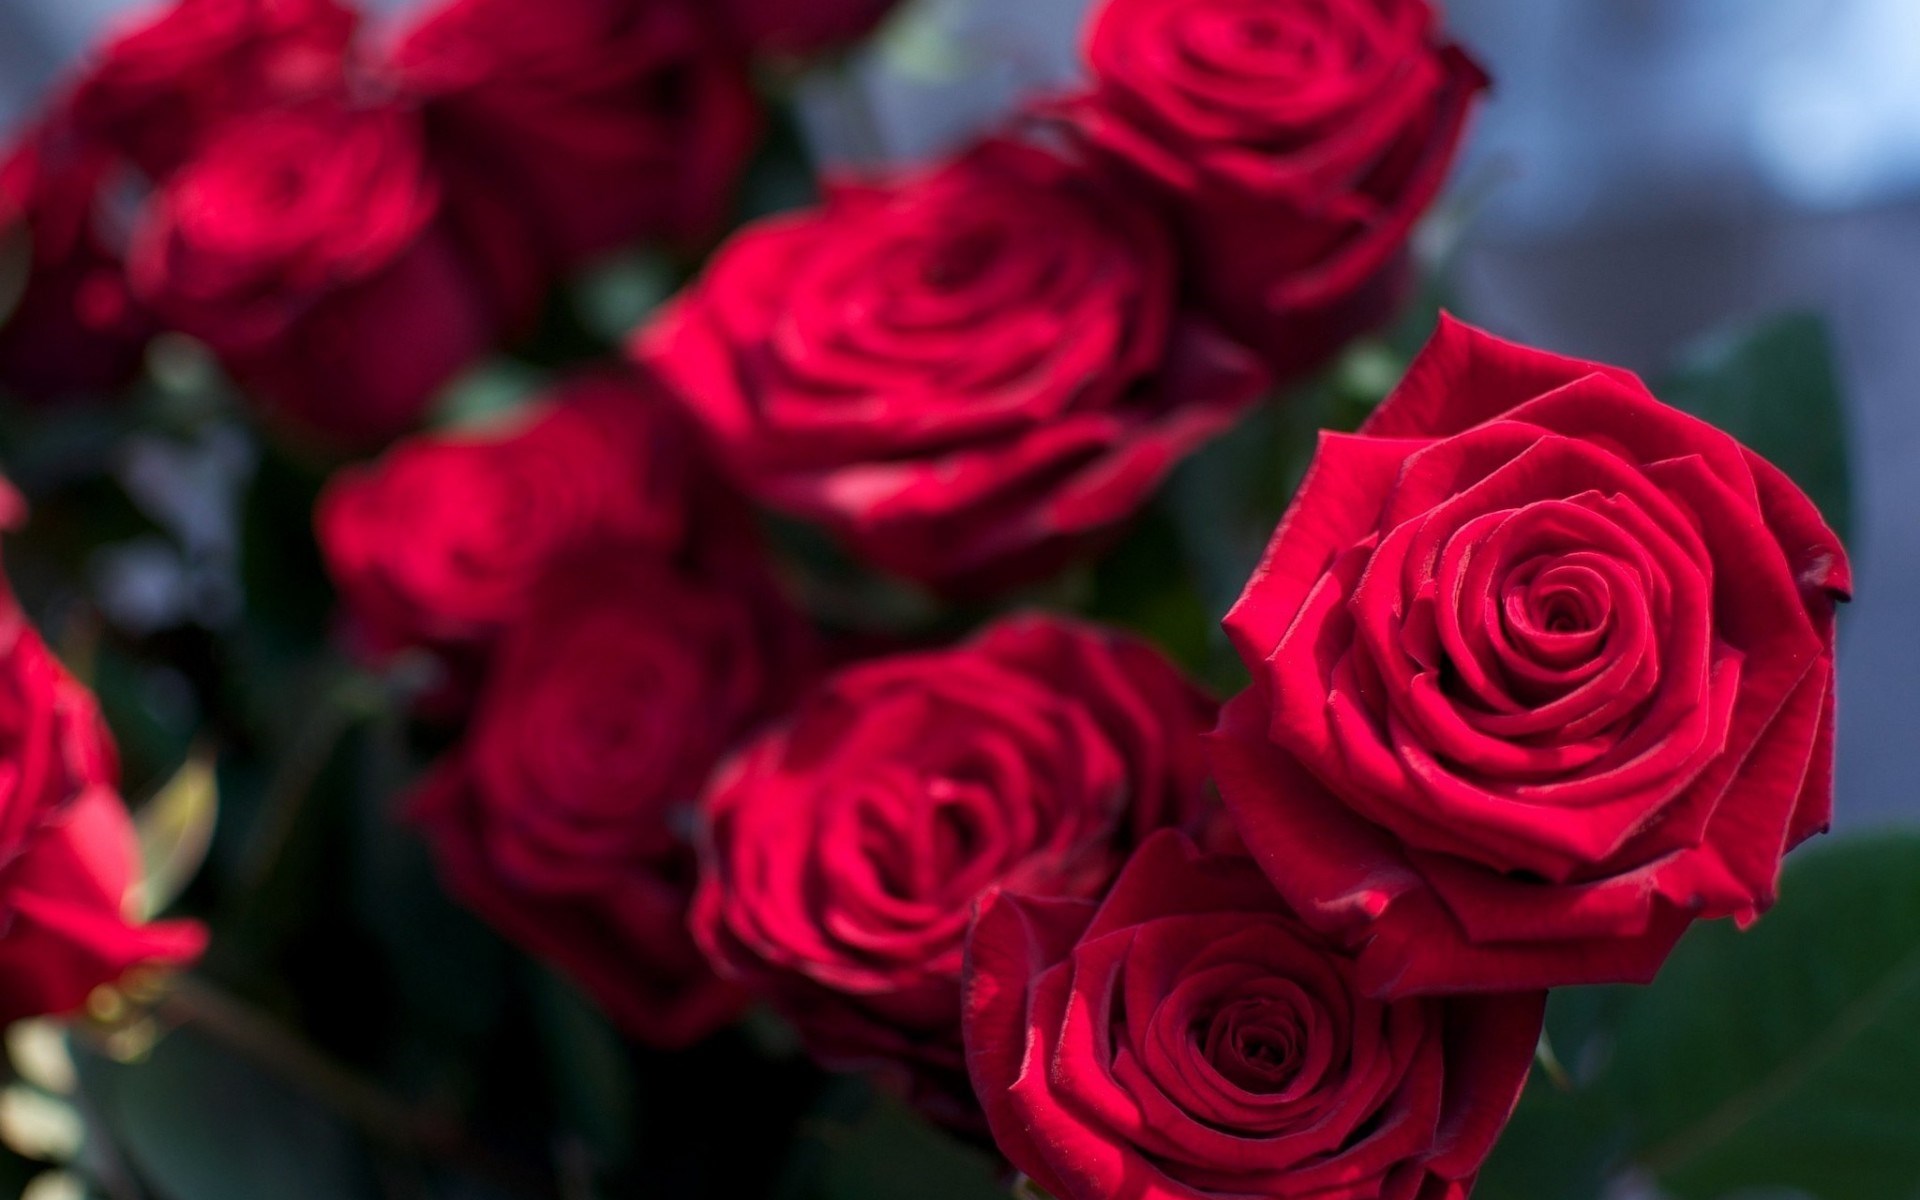 red roses wallpaper free download - HD Desktop Wallpapers | 4k HD